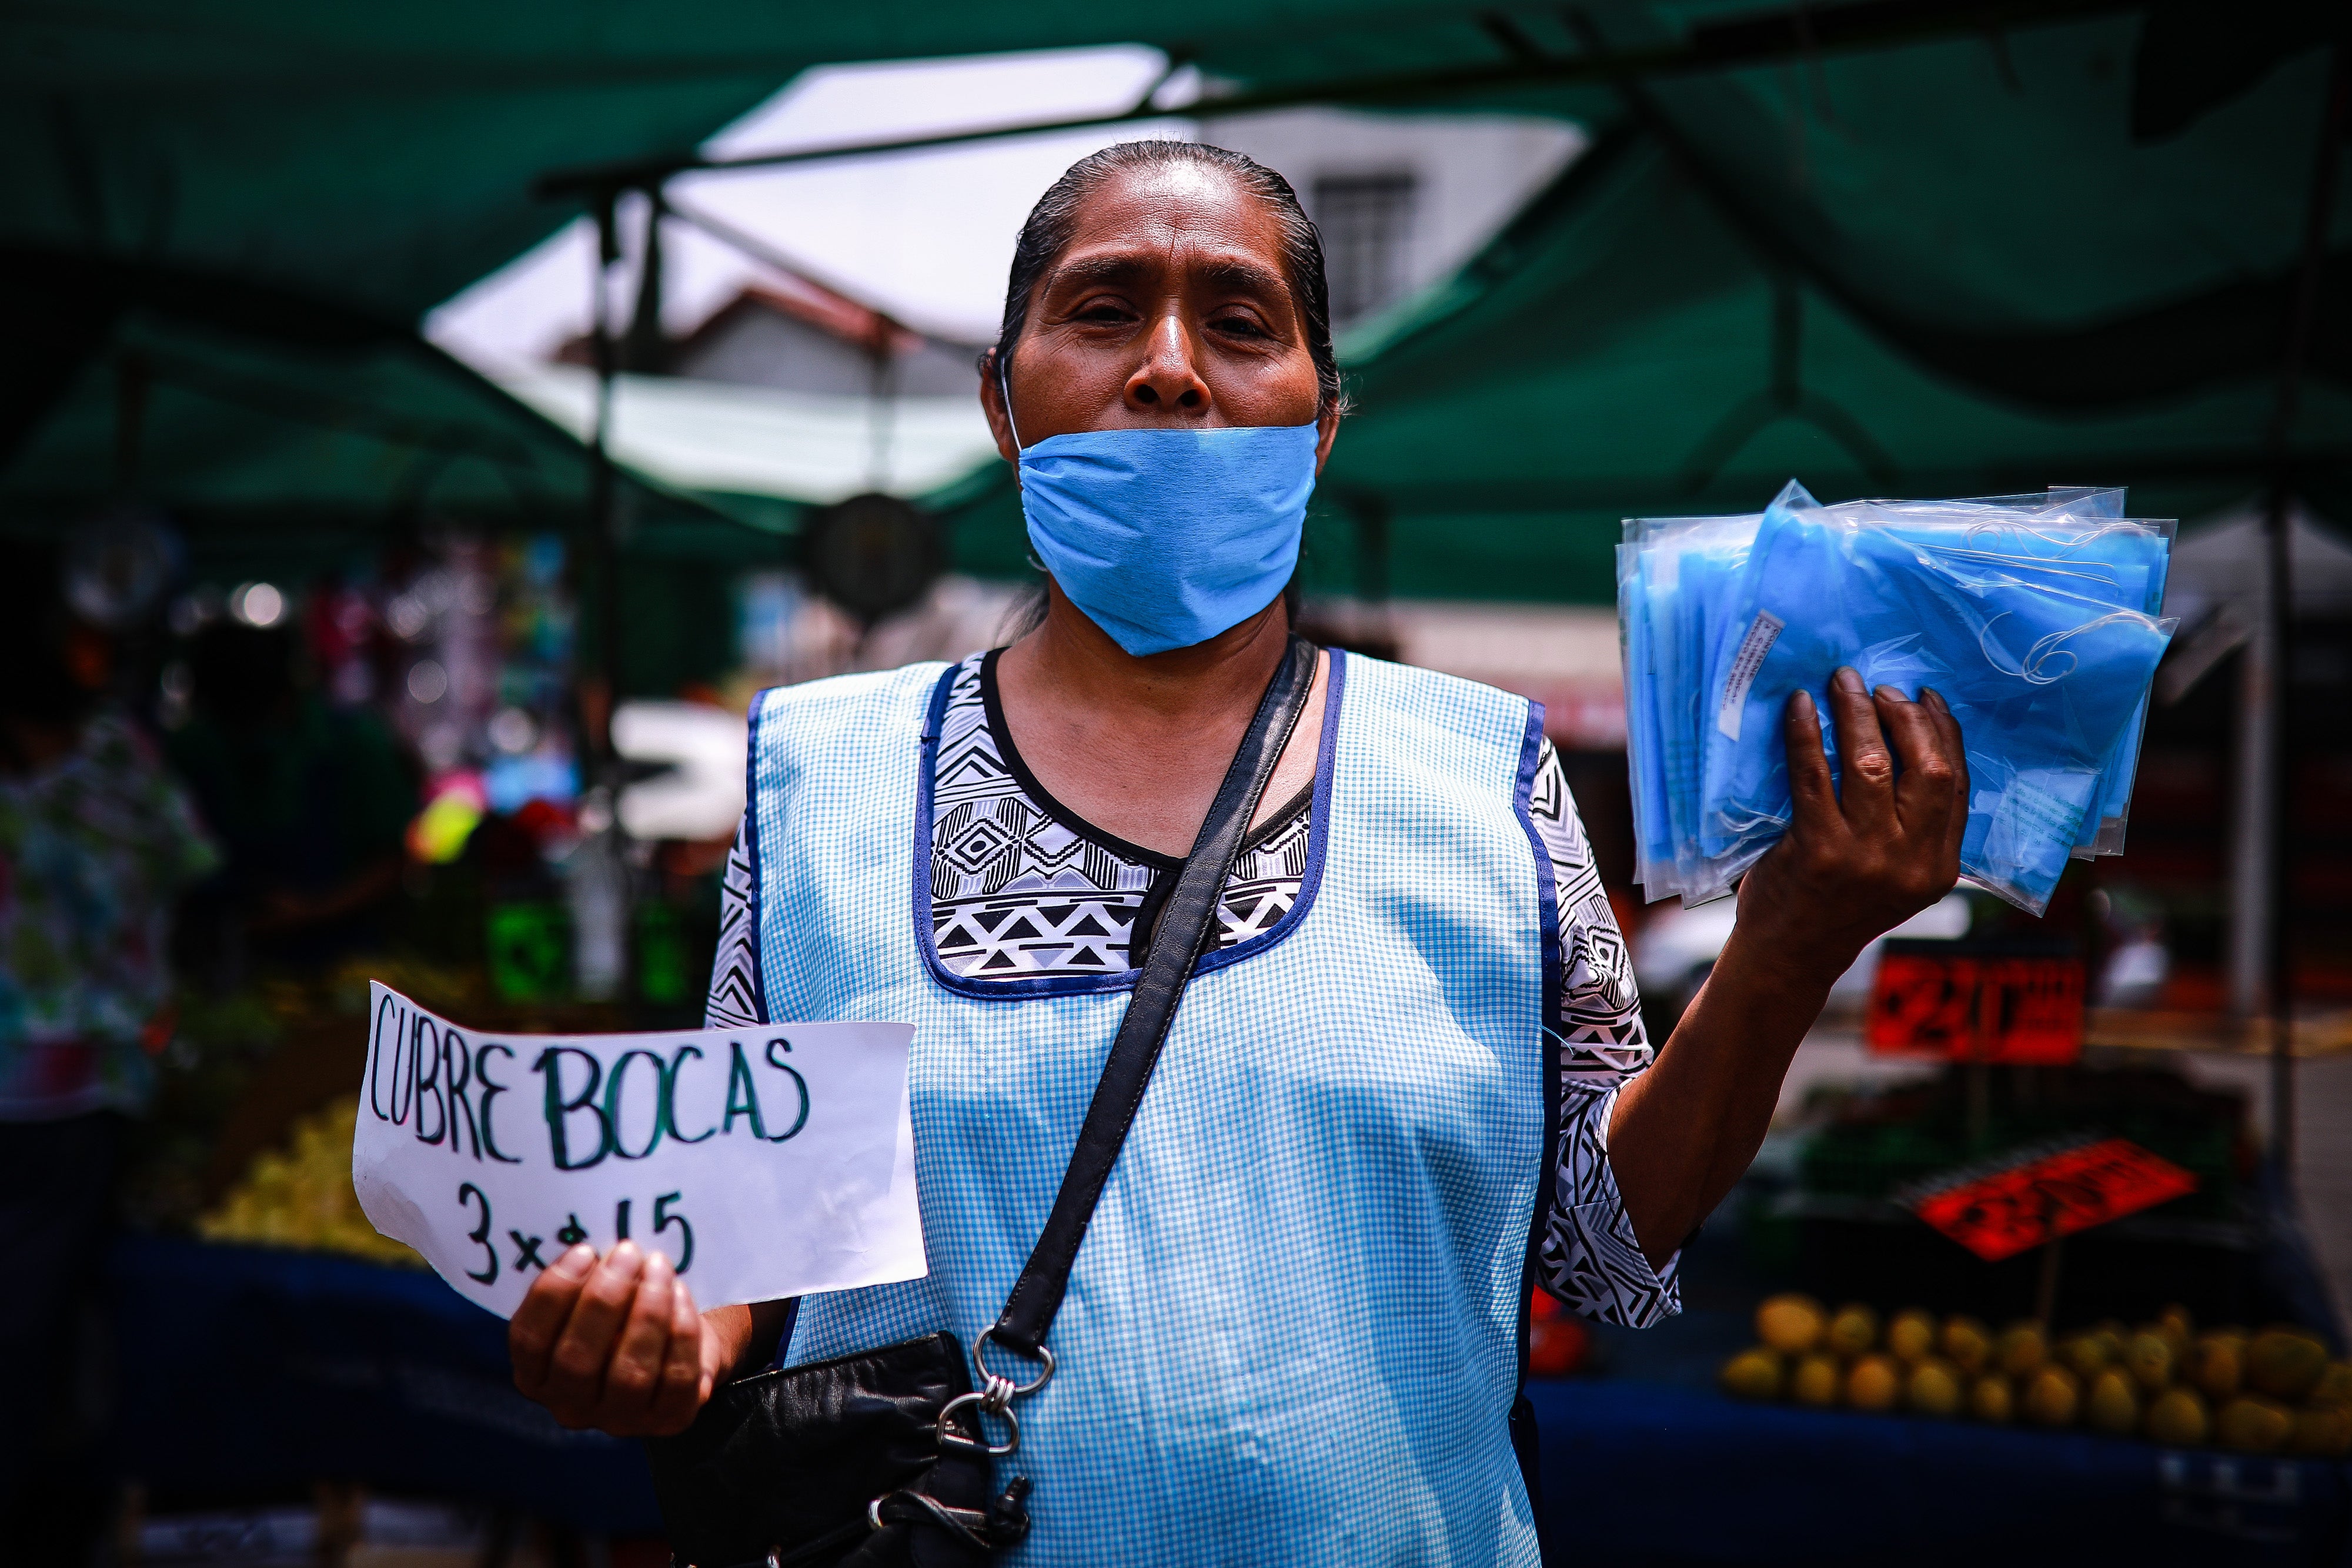 Mujer vende cubrebocas en México durante pandemia por coronavirus.